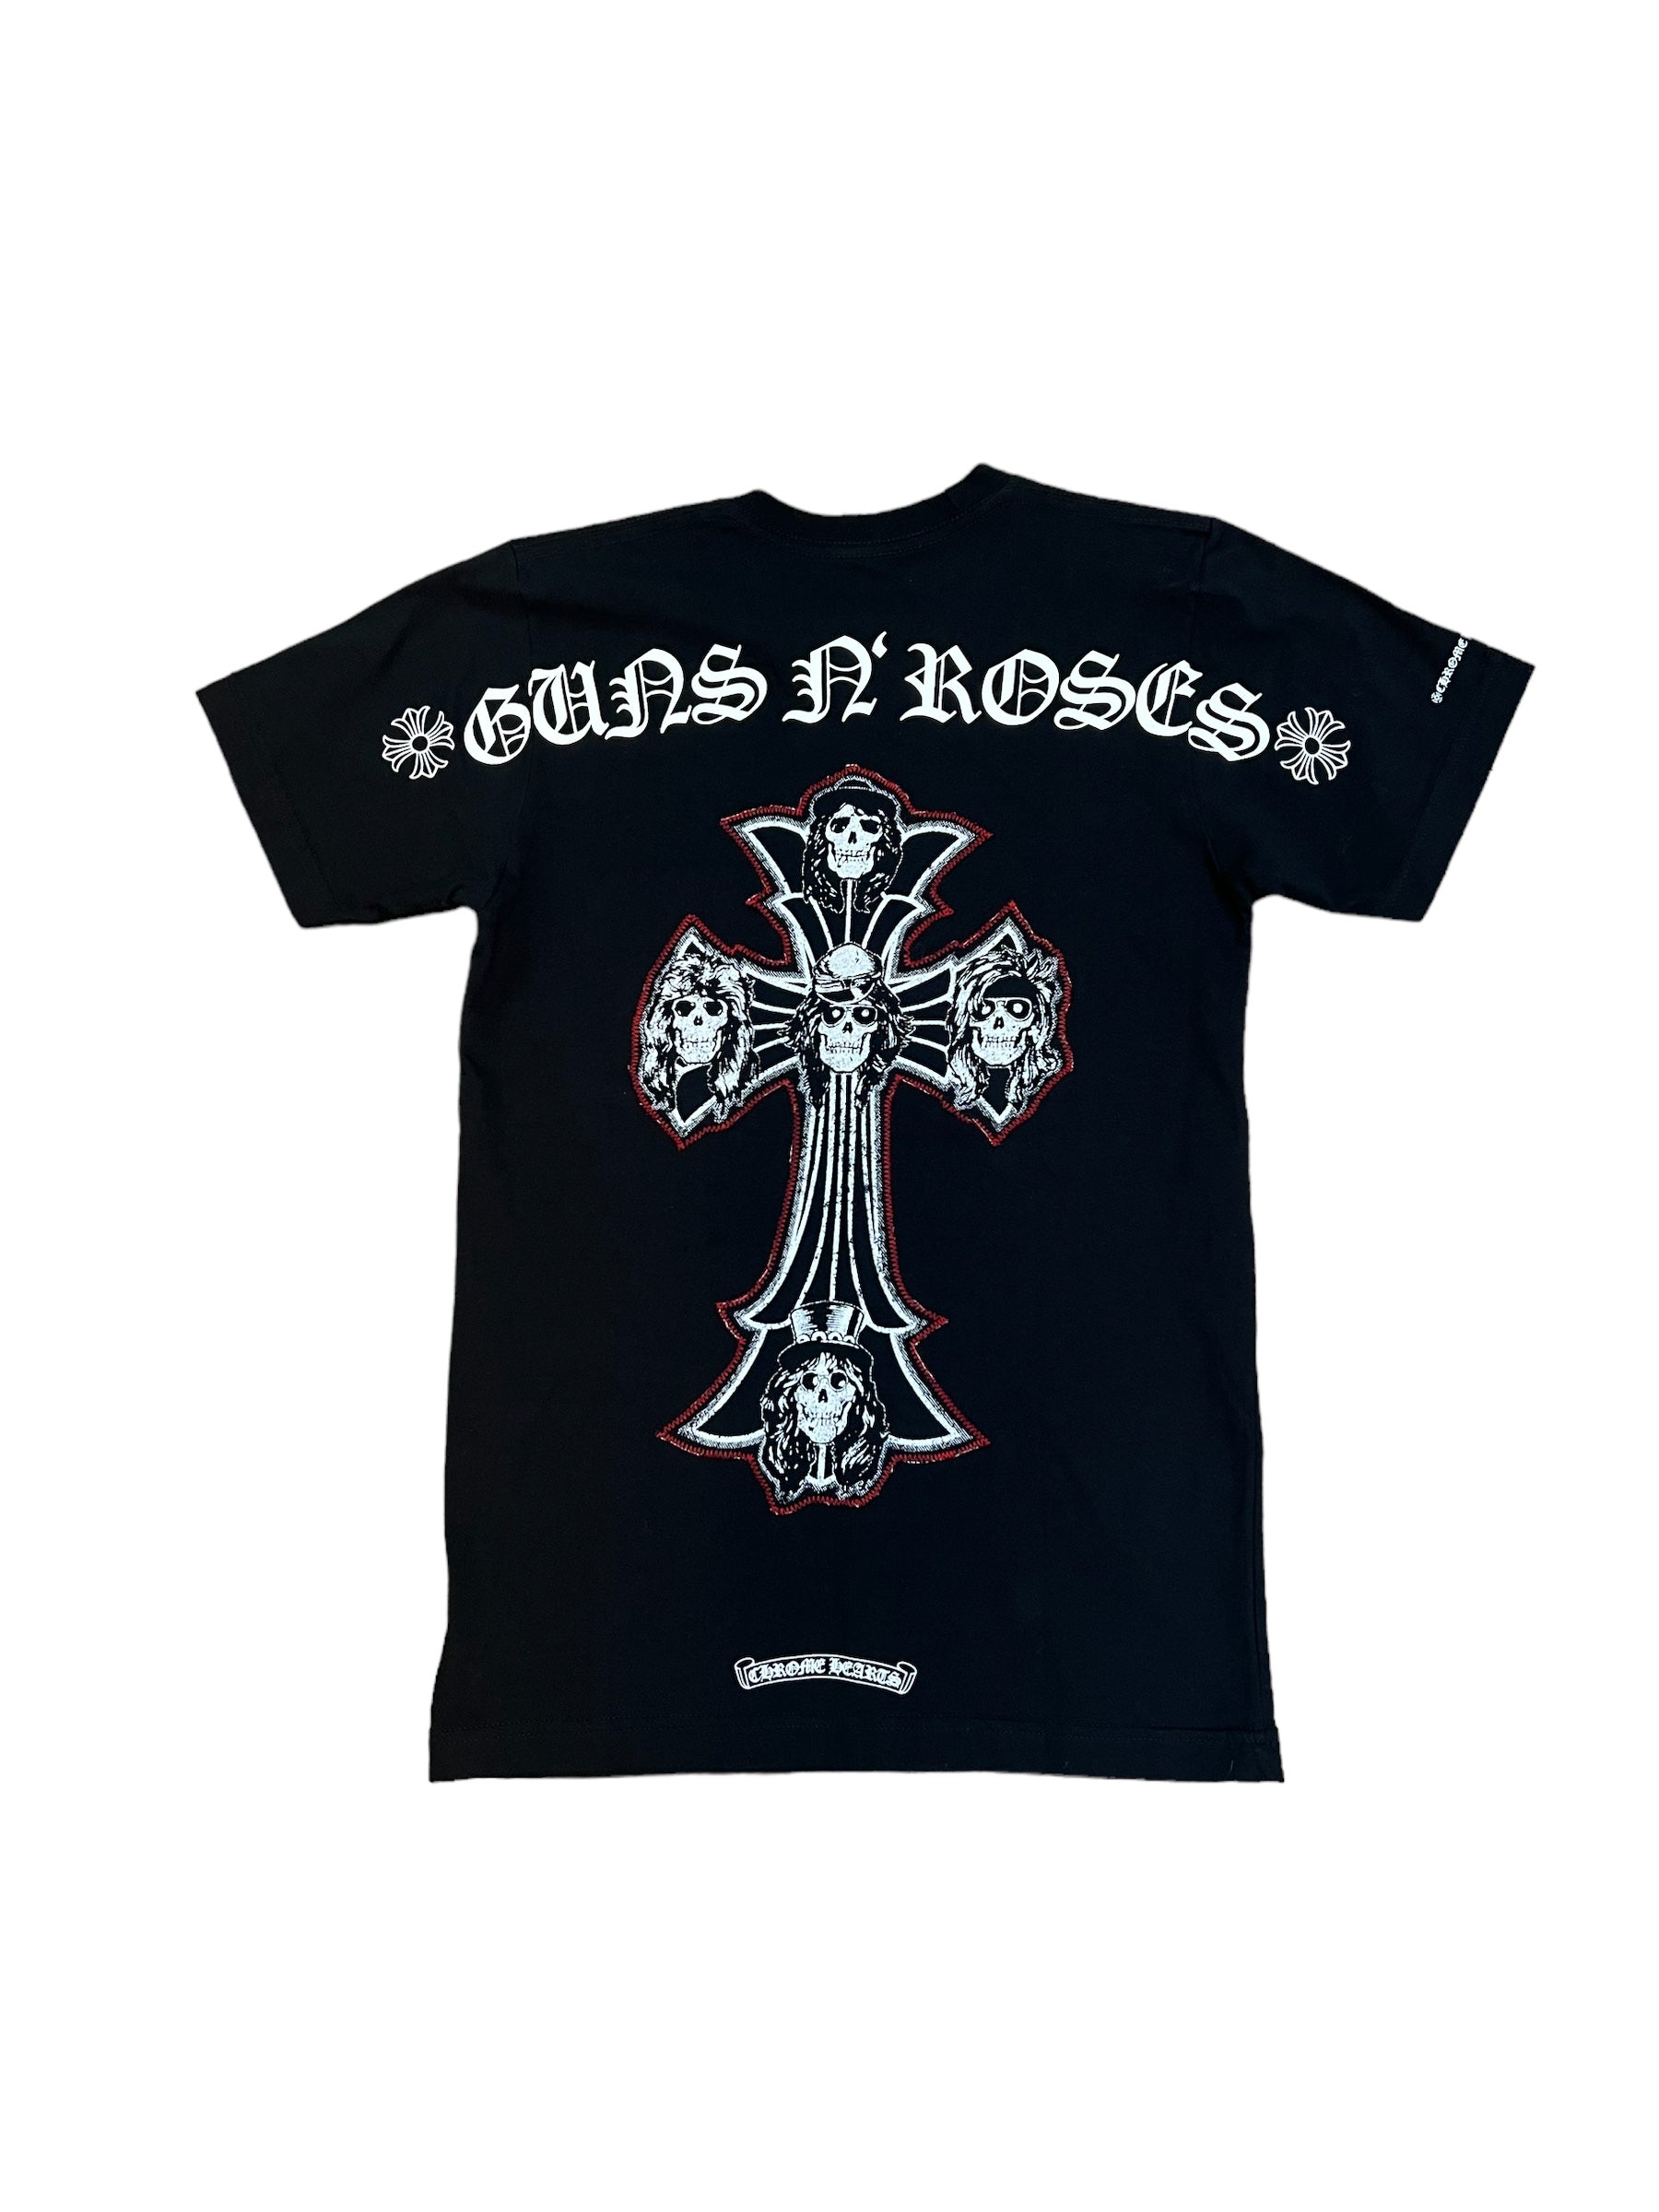 Chrome Hearts Guns N’ Roses T-Shirt 